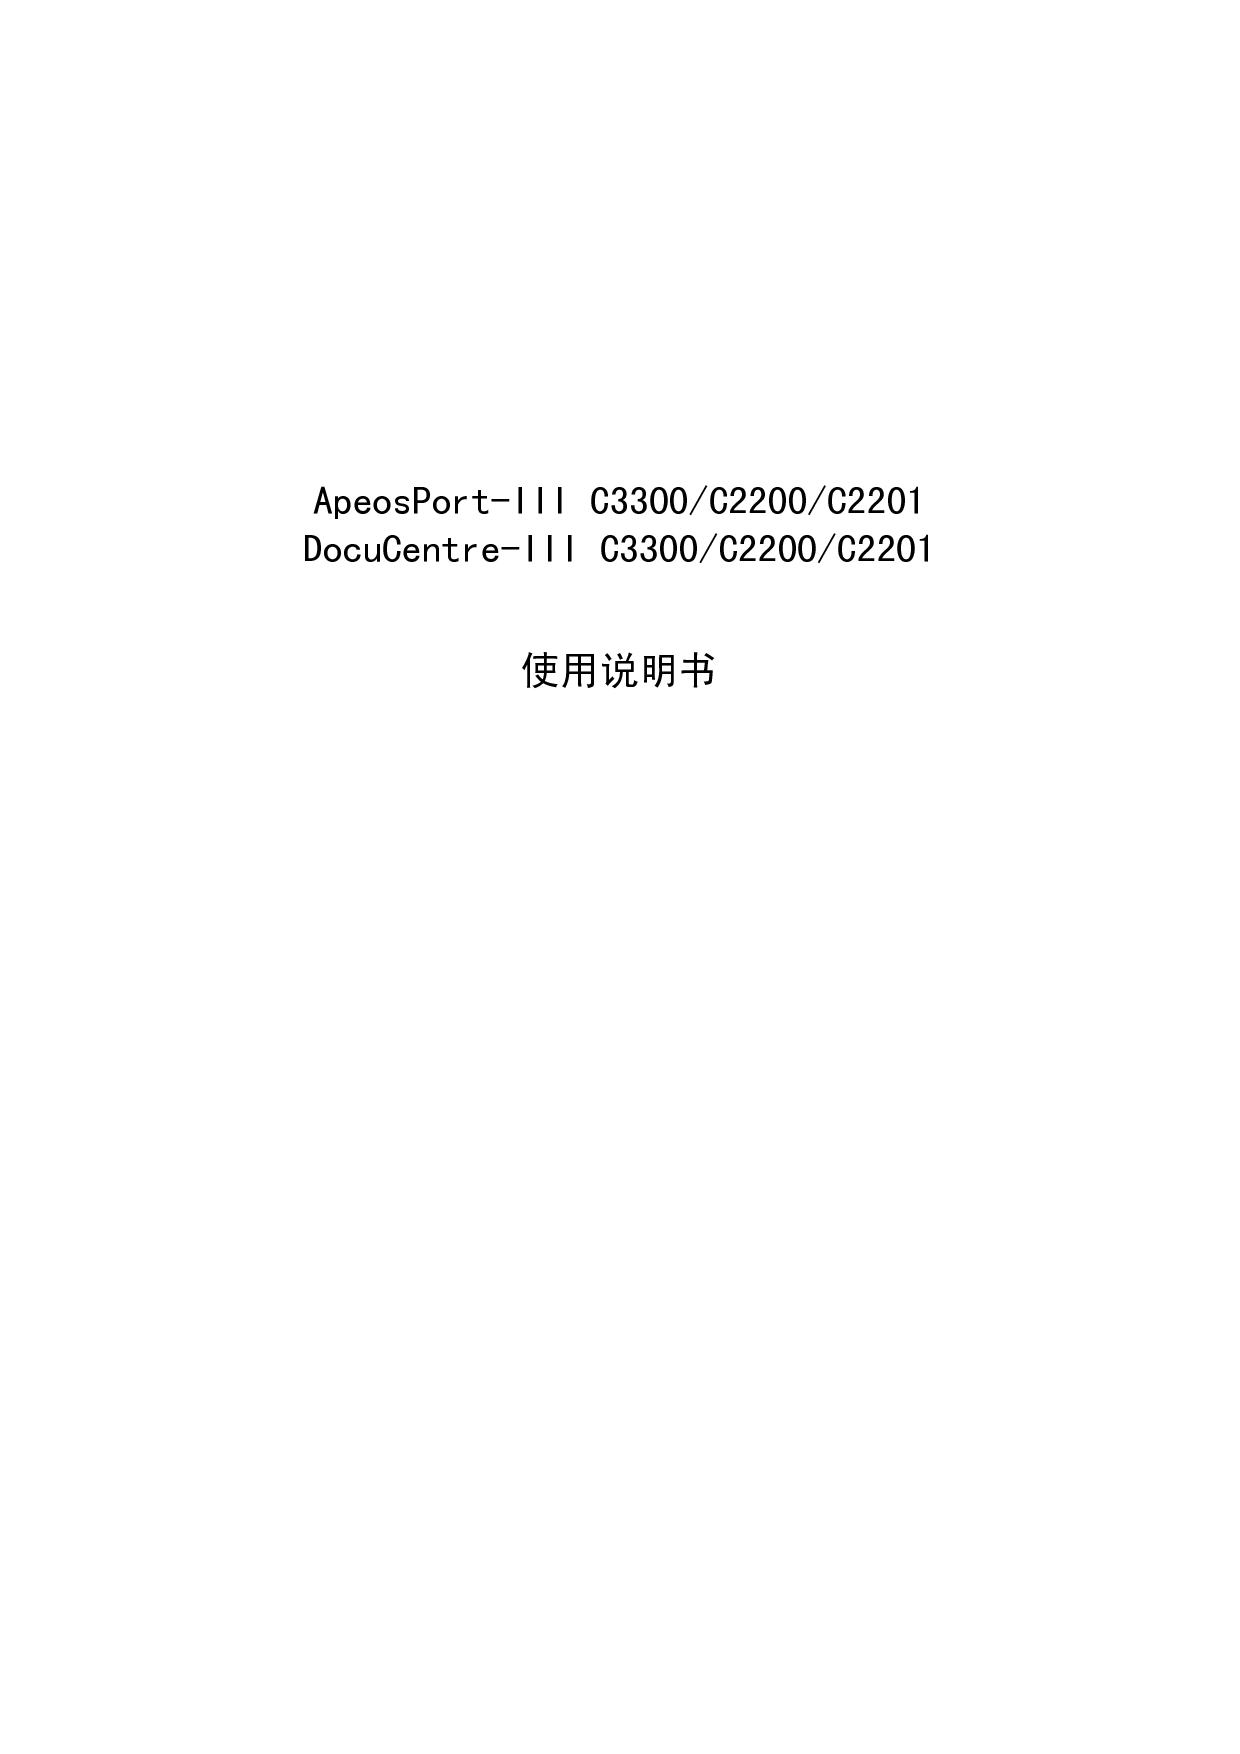 富士施乐 Fuji Xerox ApeosPort-III C2200, DocuCentre-III C2200 使用说明书 封面